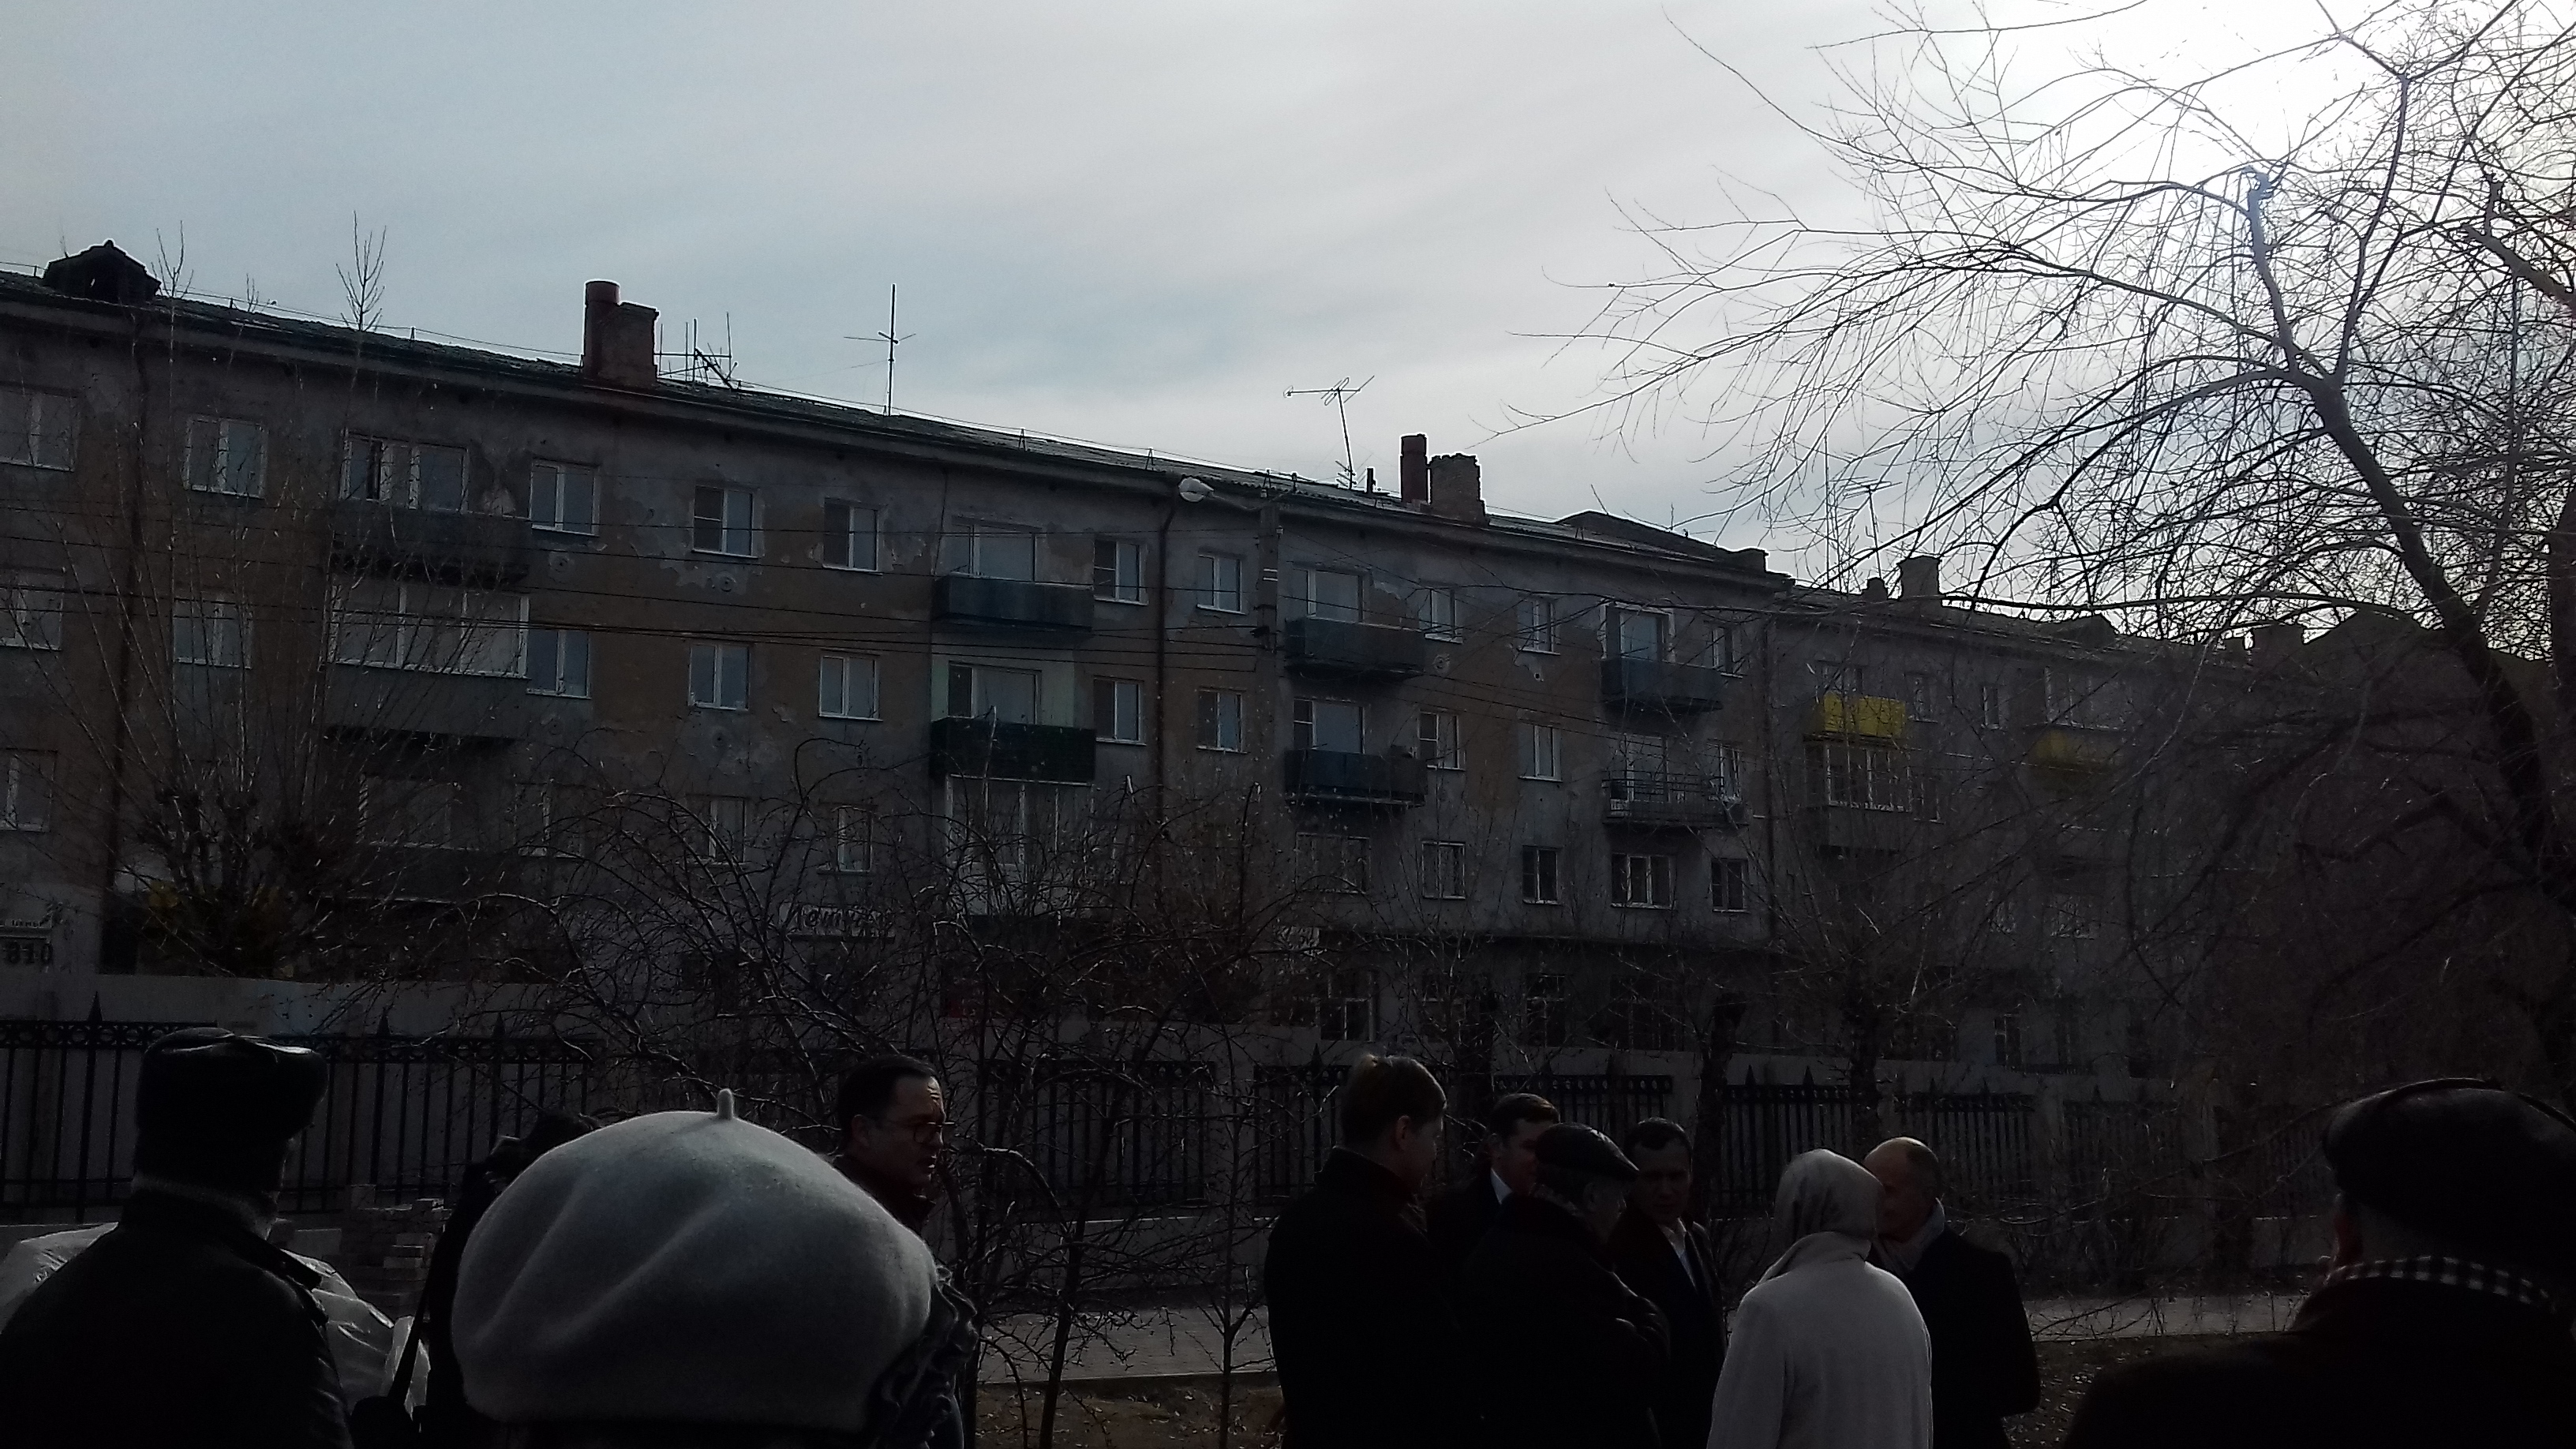 Читинец кричал Ждановой со своего балкона во время осмотра пл. Декабристов